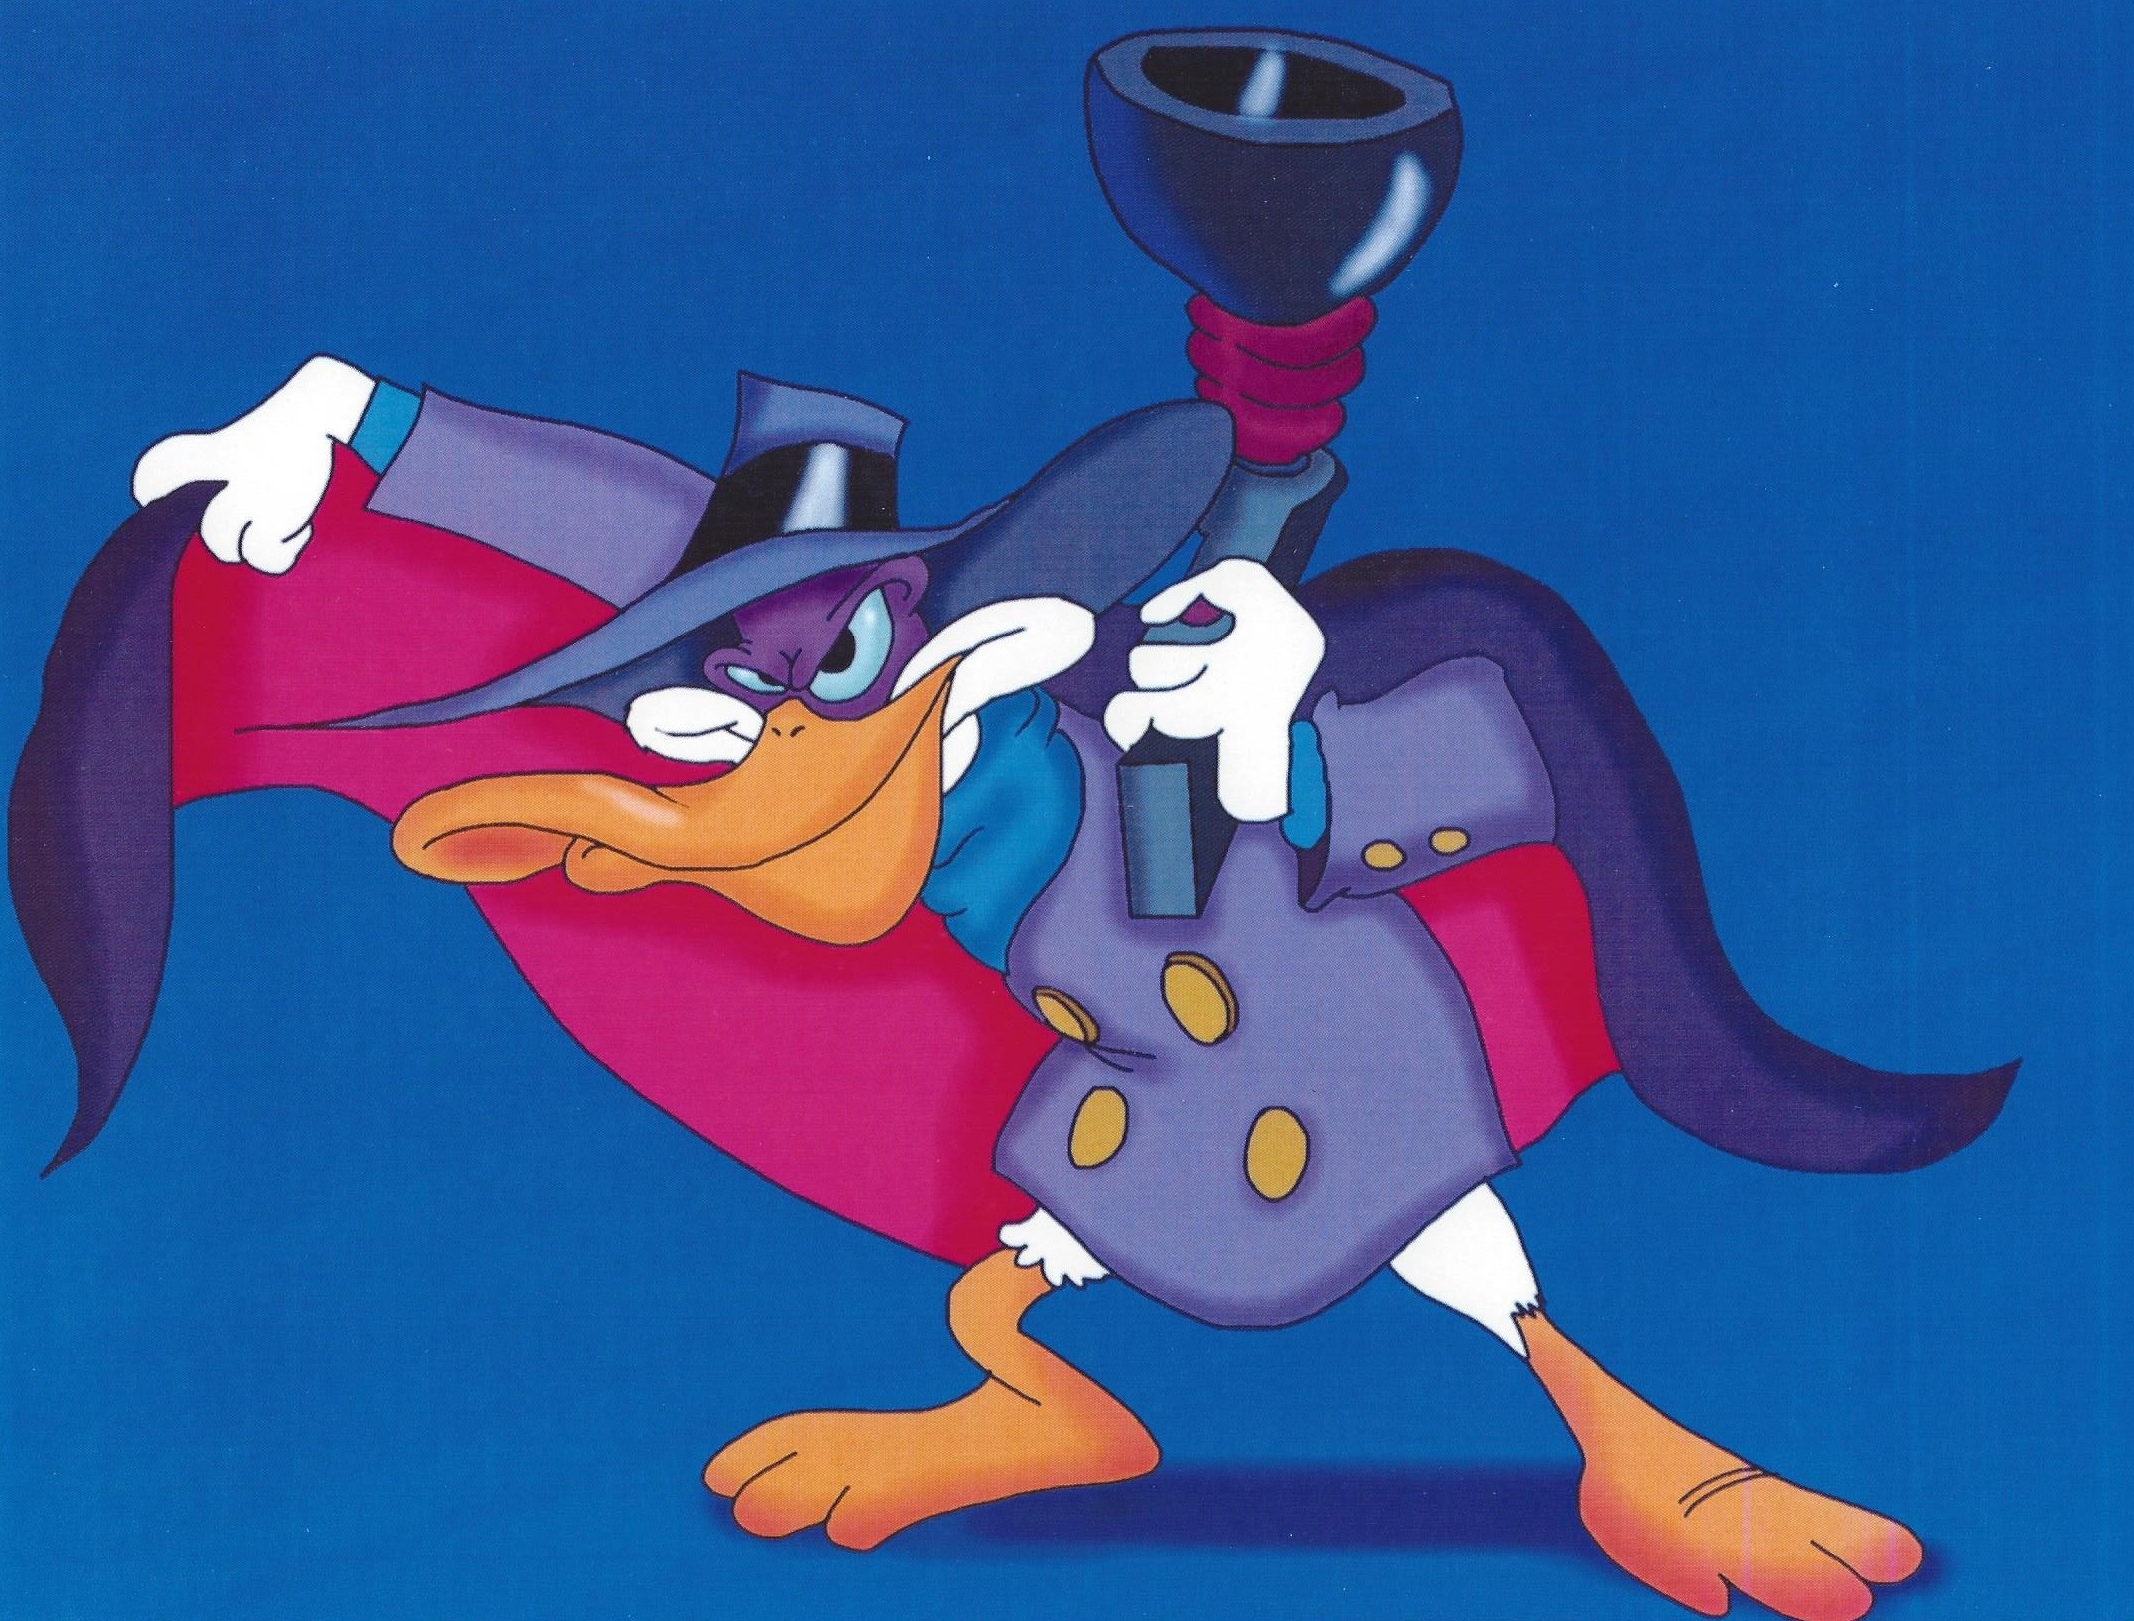 Darkwing Duck voiced by Jim Cummings